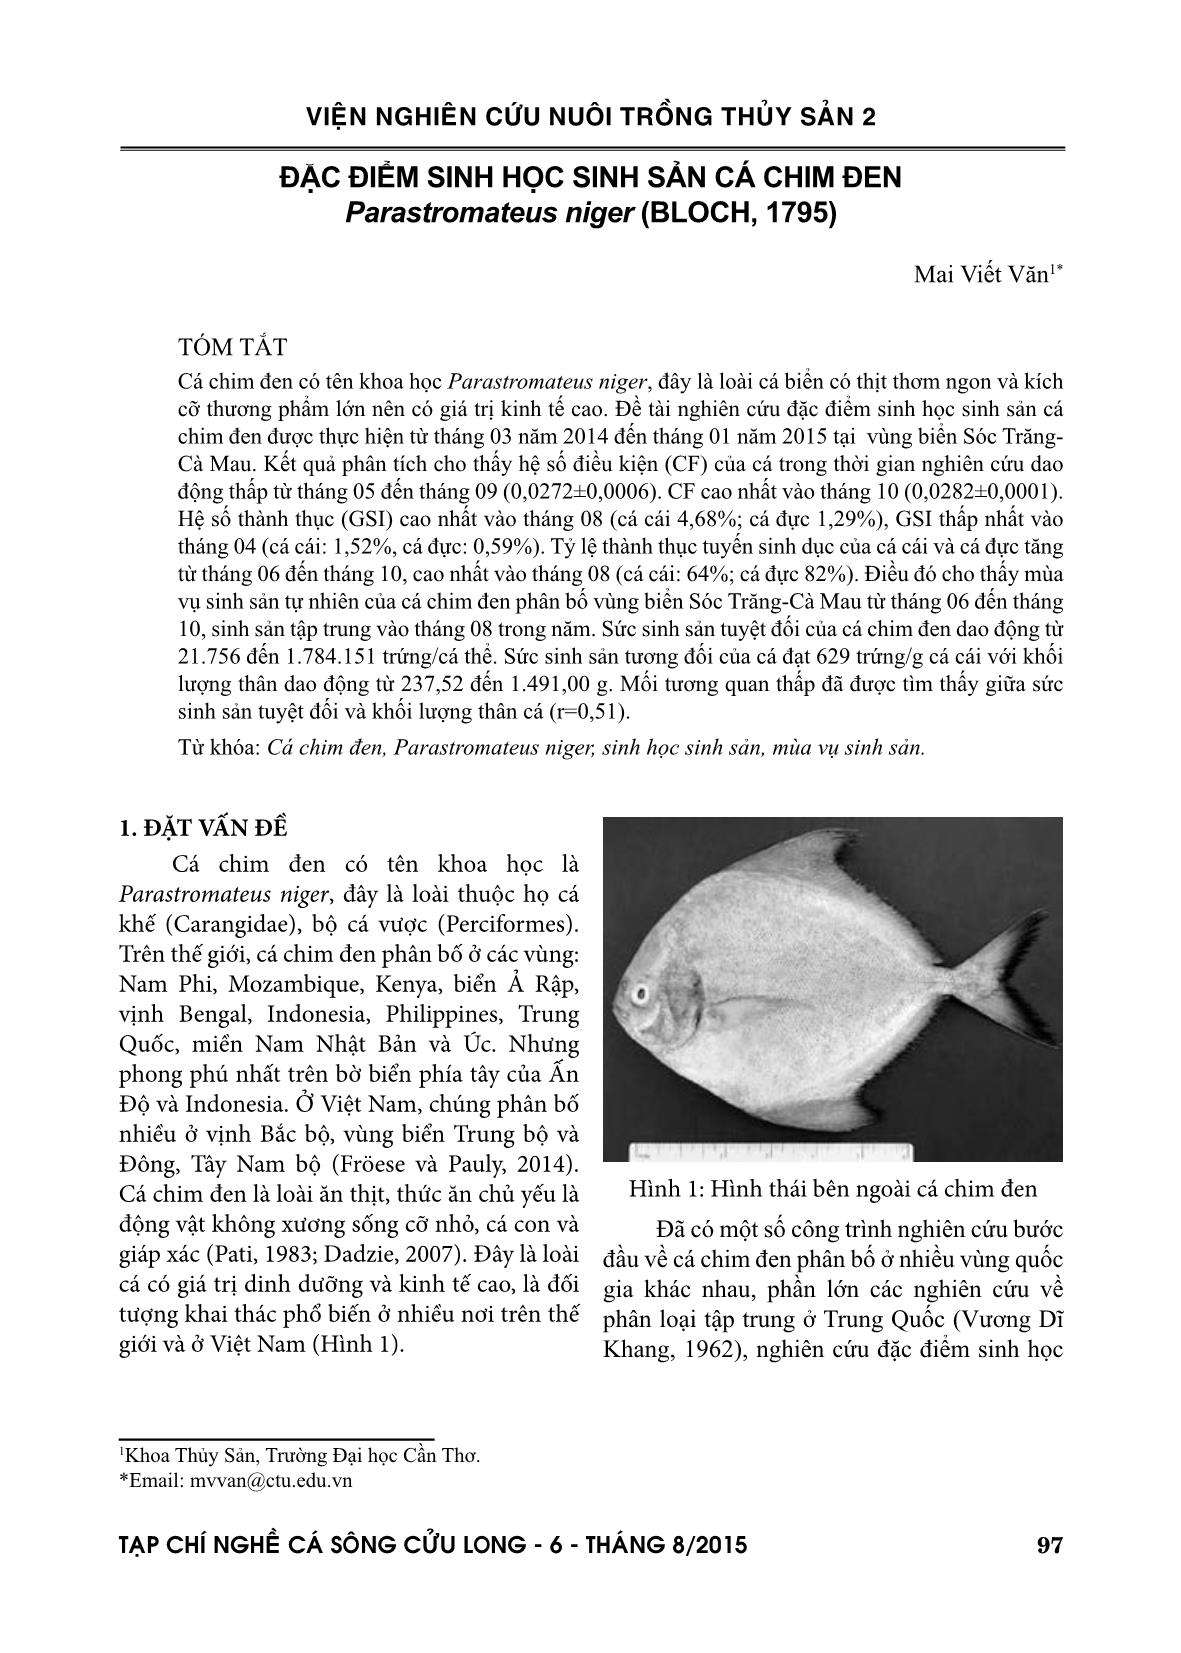 Đặc điểm sinh học sinh sản cá chim đen parastromateus niger (bloch, 1795) trang 1